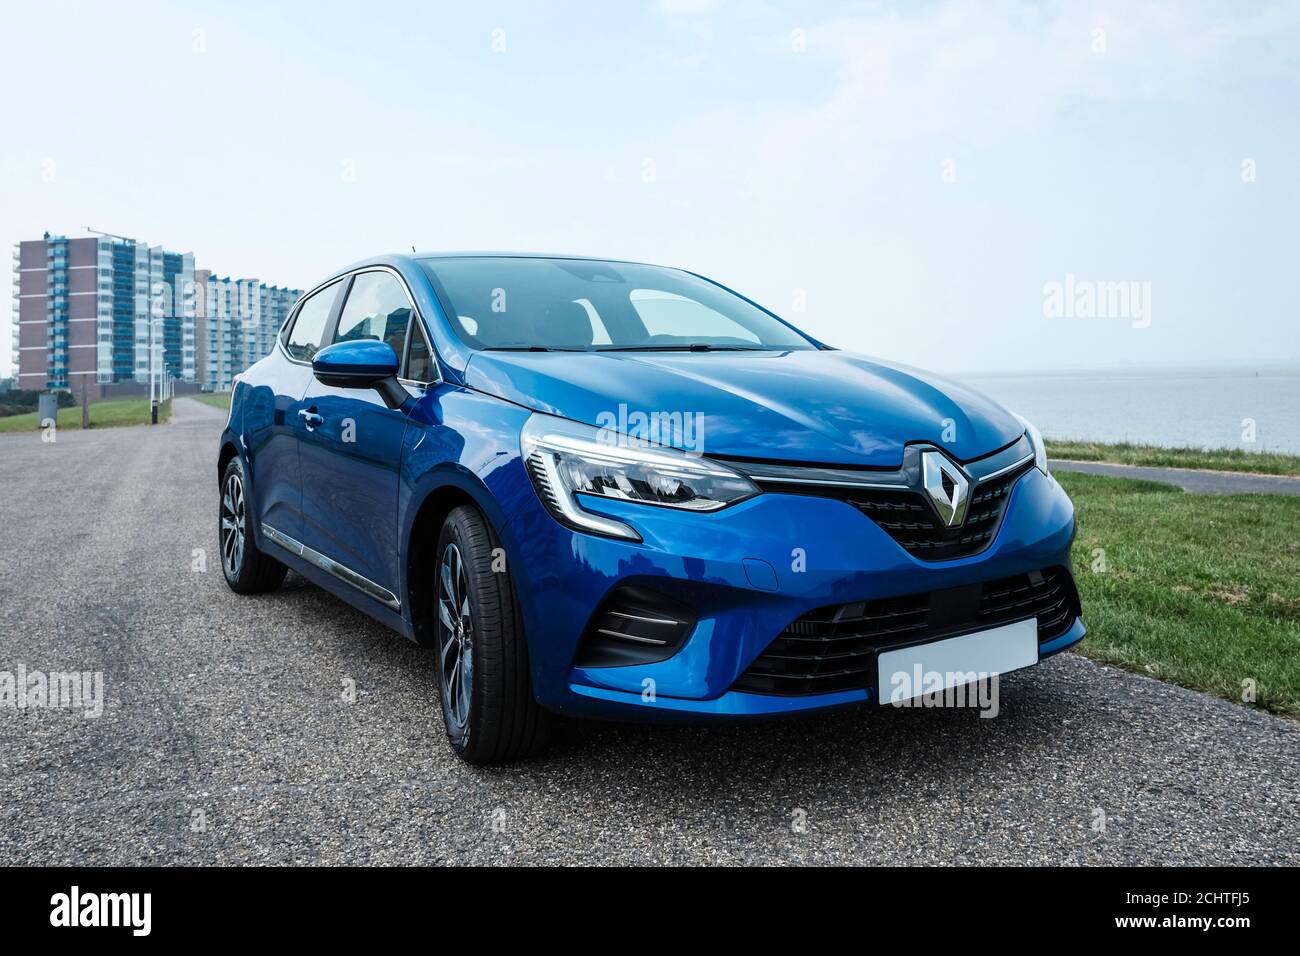 2019 Renault Clio en el color azul rqh hierro Fotografía de stock - Alamy